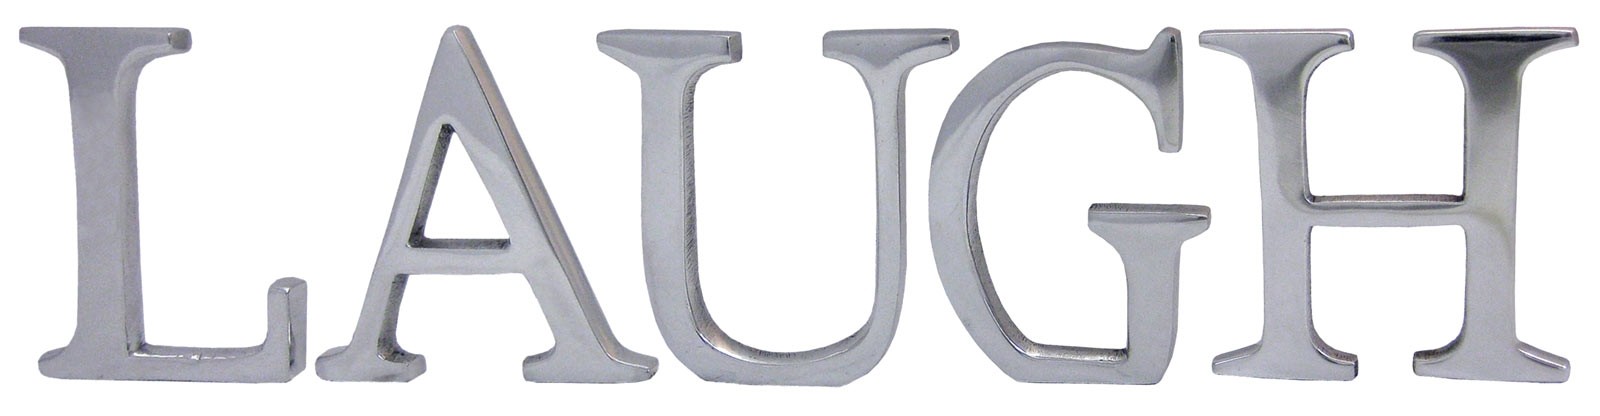 9cm Aluminium Laugh Letters